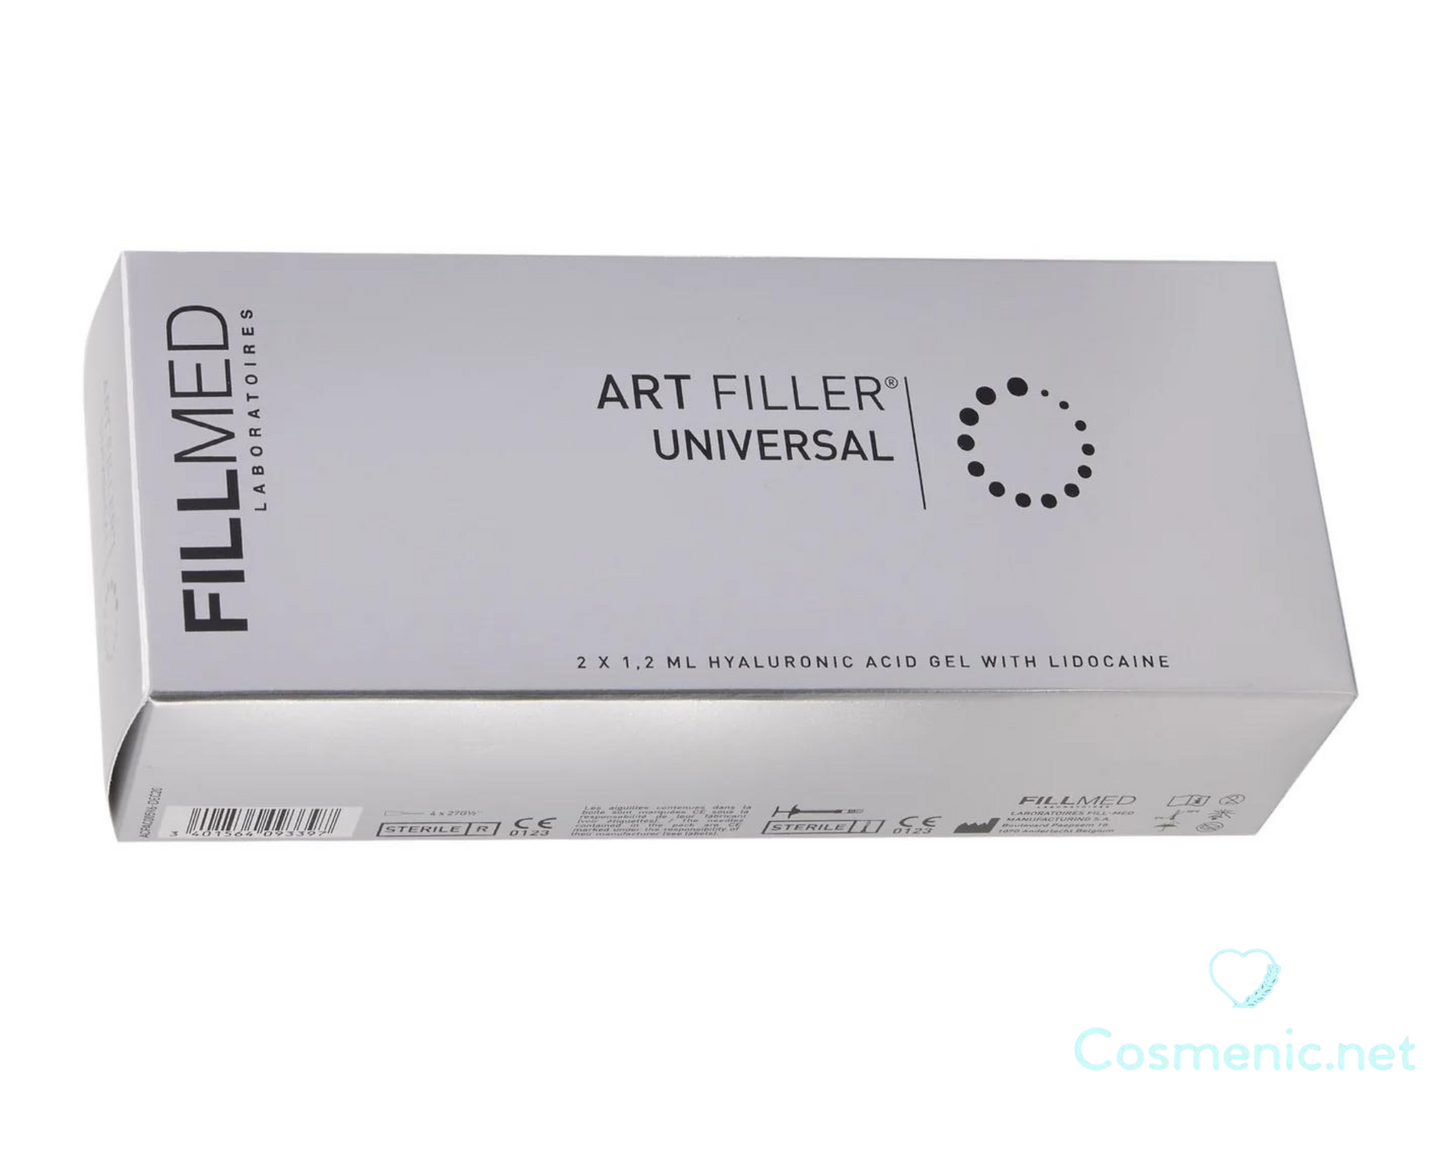 Art Filler Universal with lidocaine 2x1.2ml